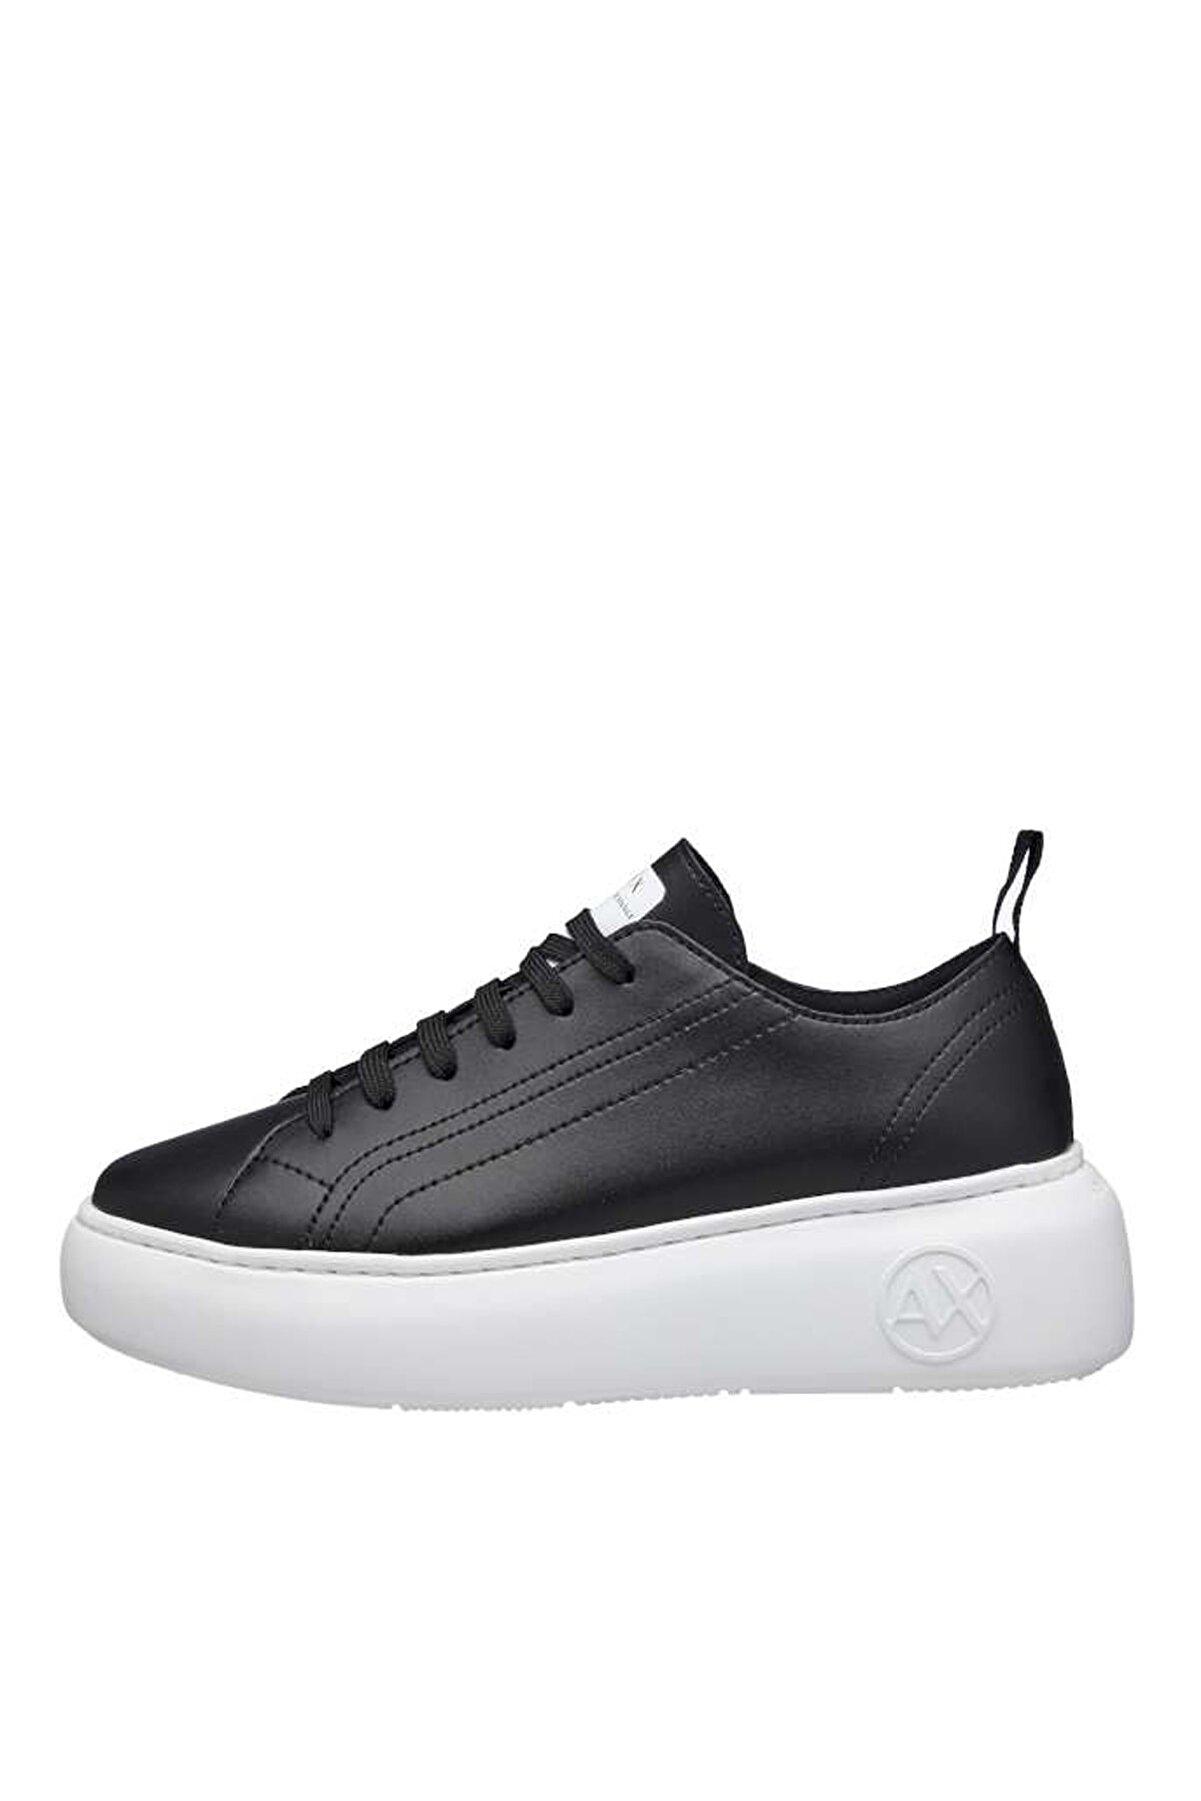 Armani Exchange Kadın Siyah Spor Sneaker Ayakkabı